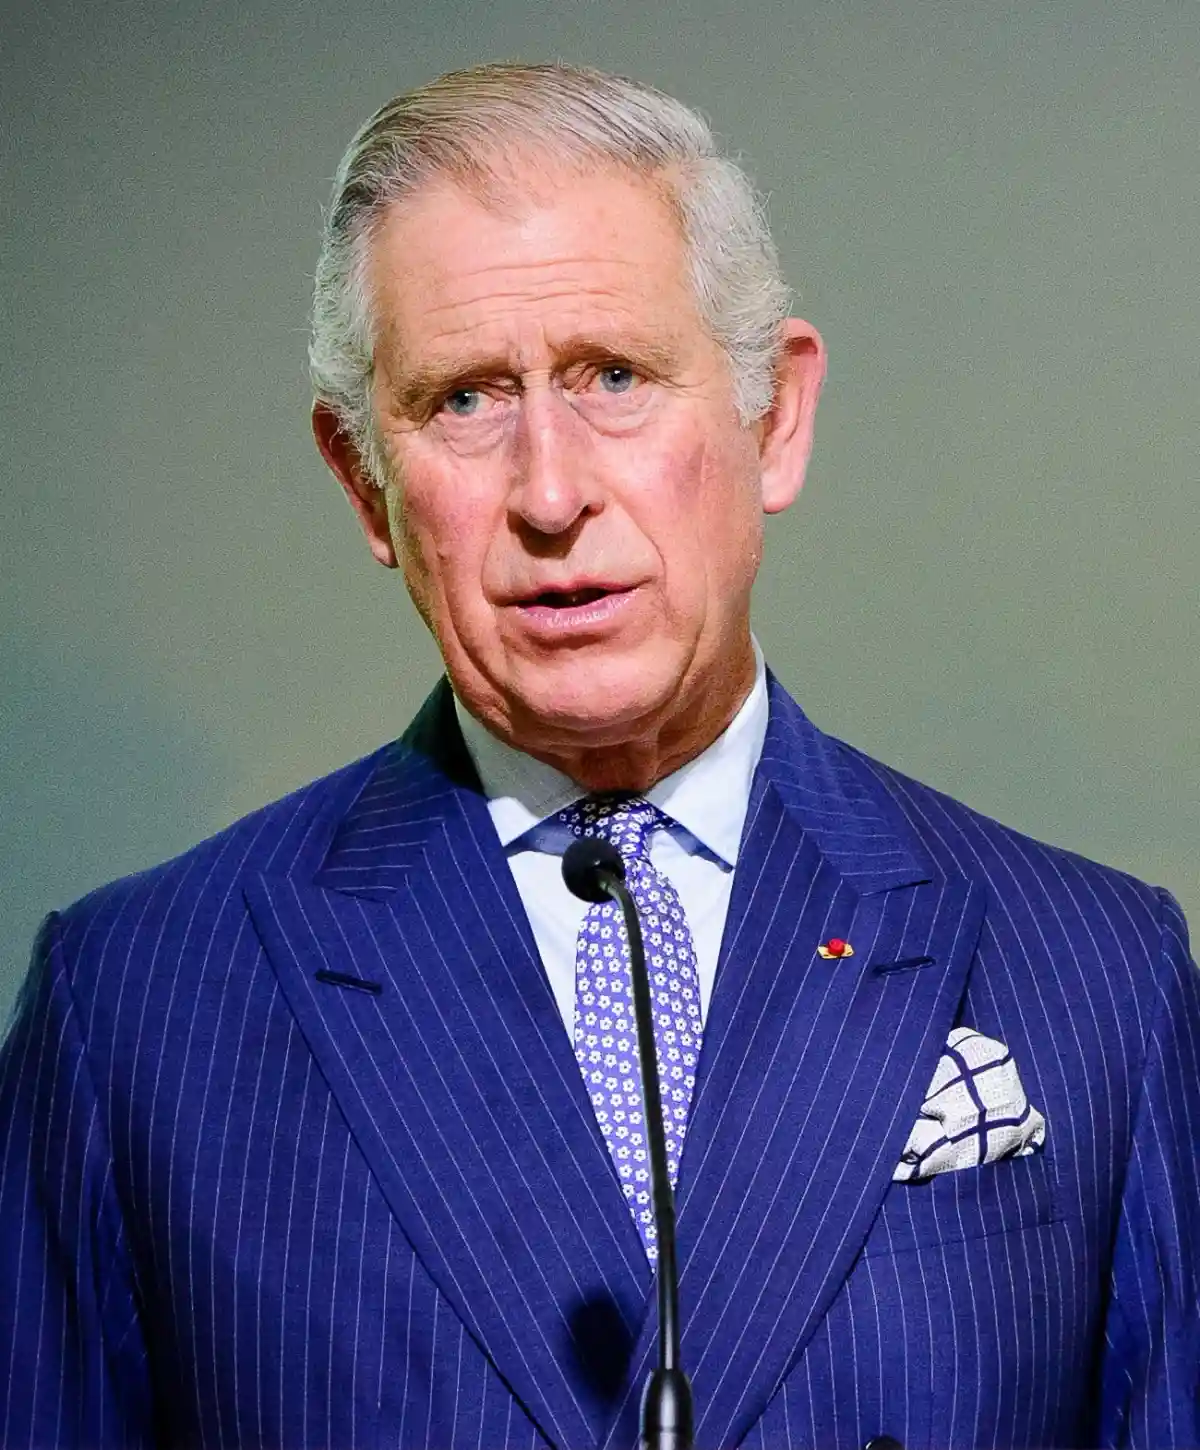 Принц Чарльз принимал пожертвования, не обращая внимания не риски для репутации. Фото: Arnaud BOUISSOU   / wikimedia